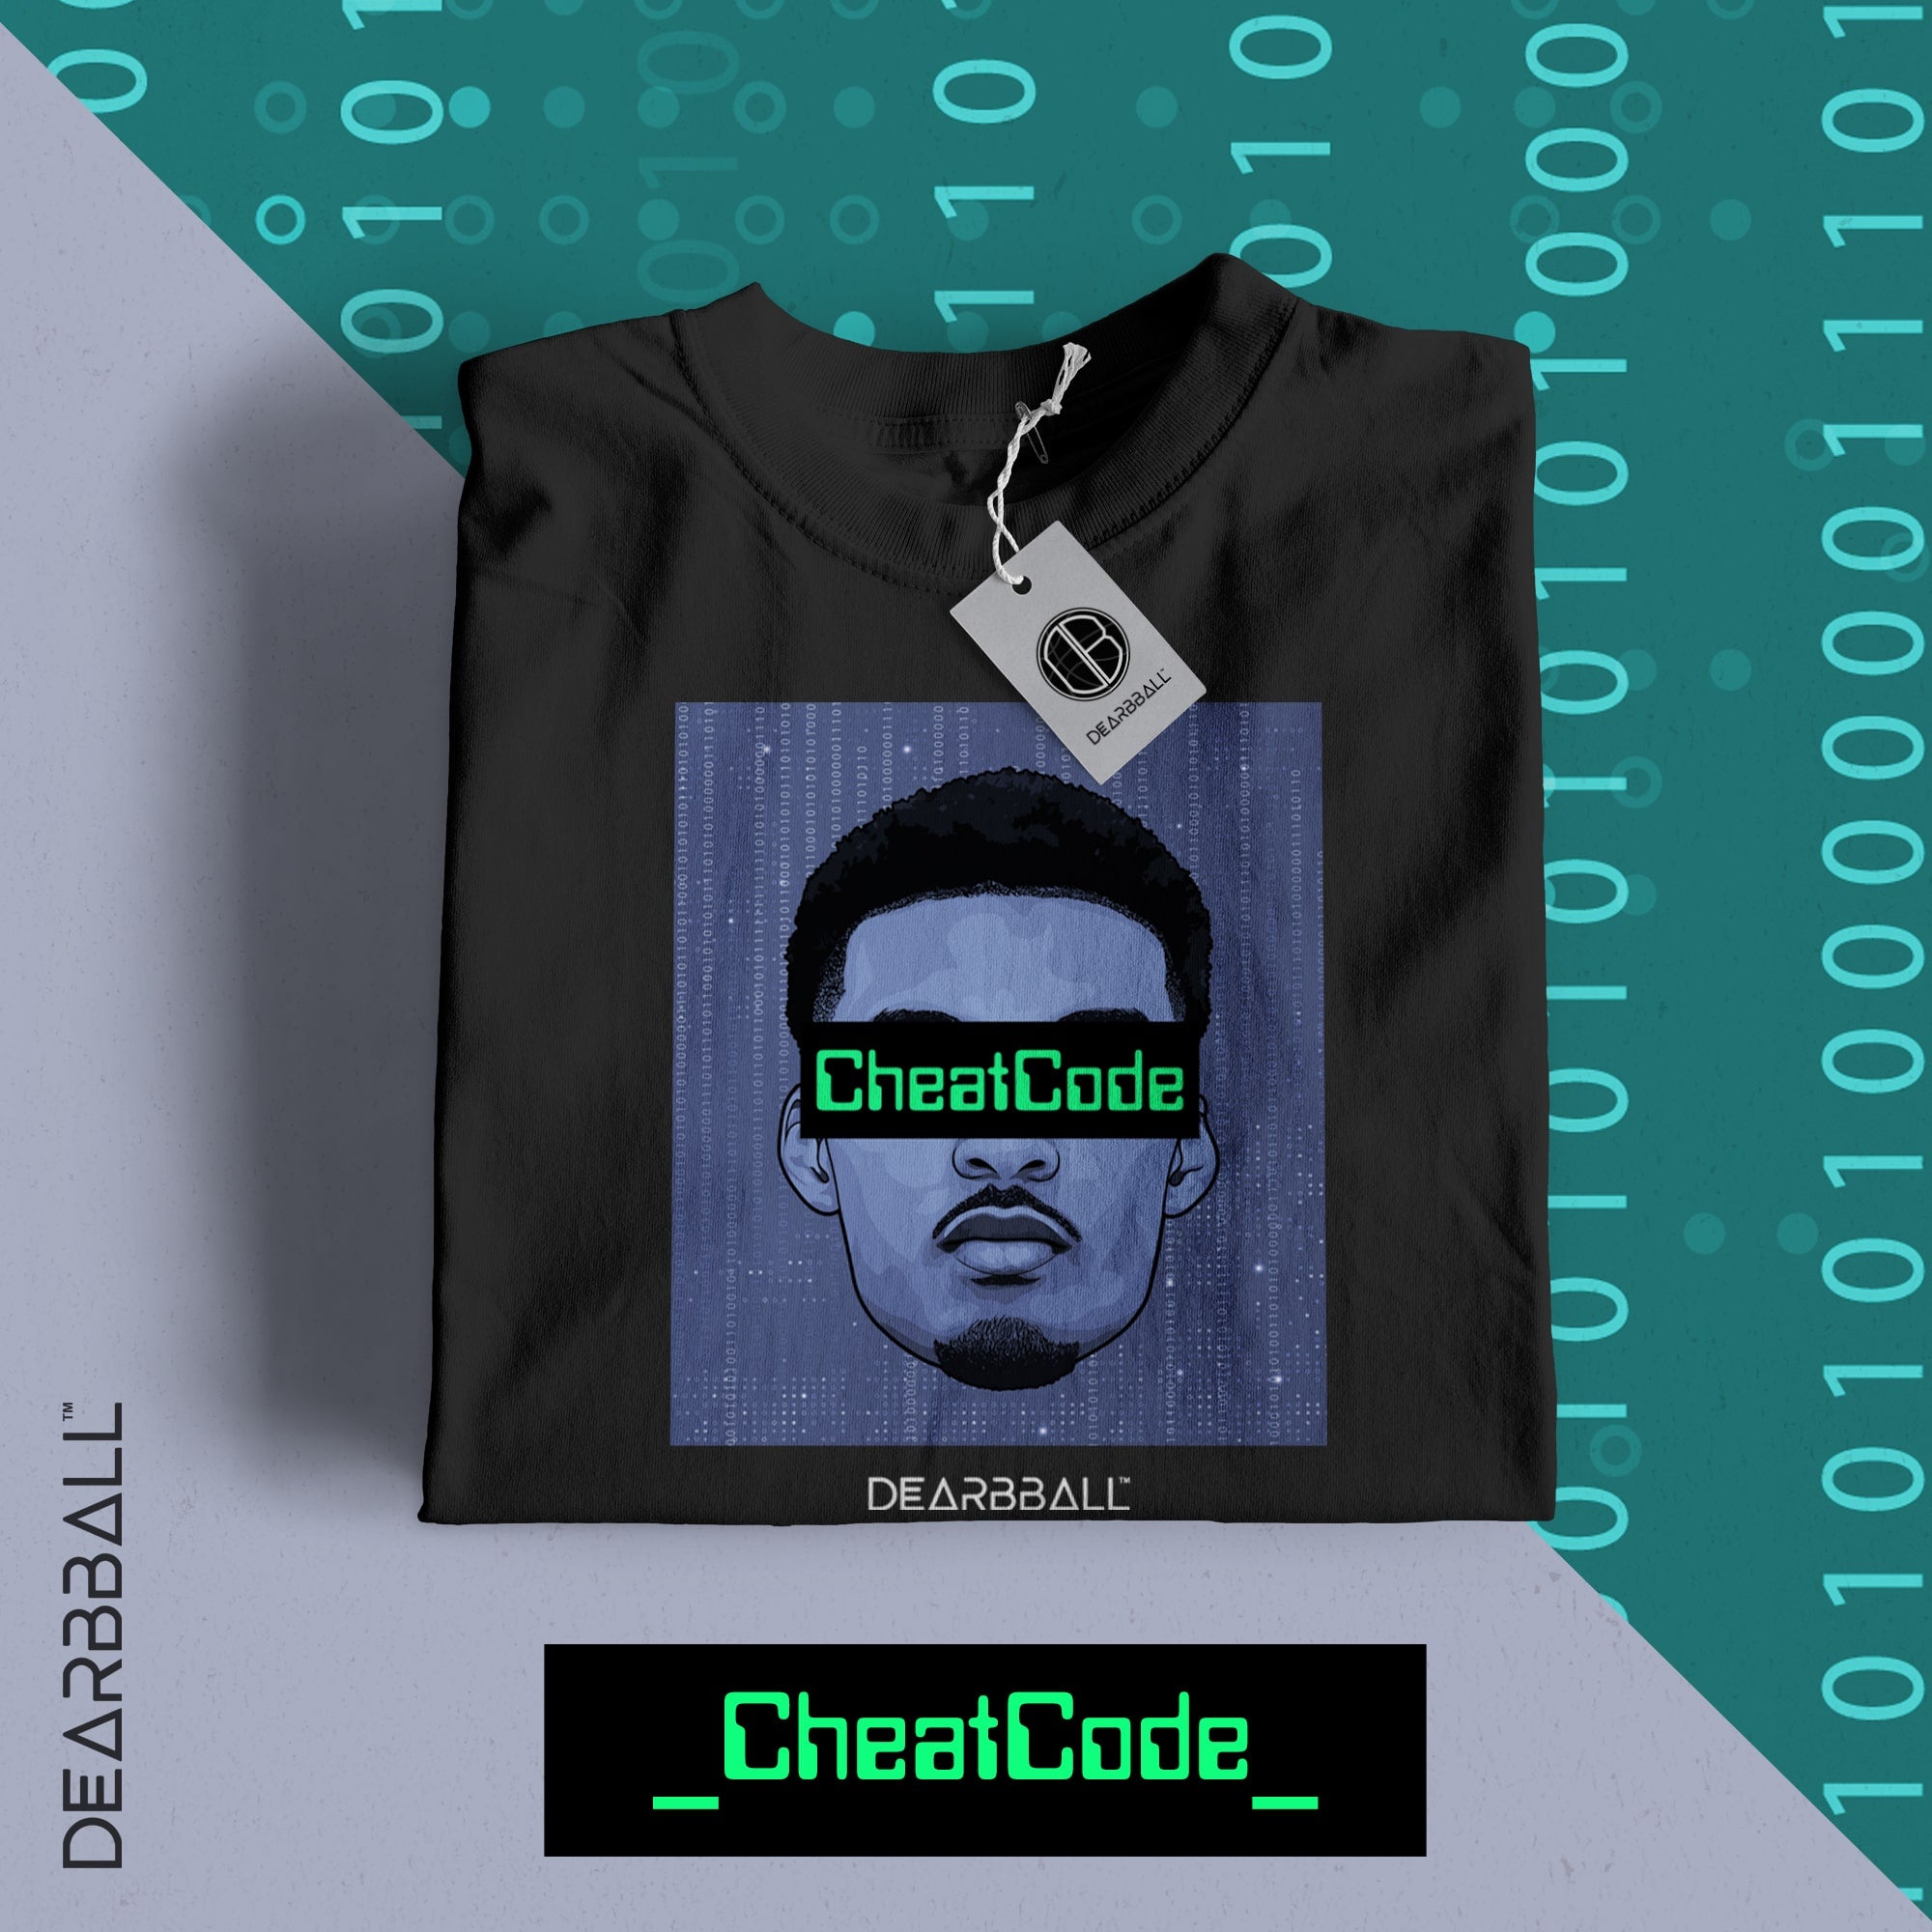 [NIÑOS] Camiseta DearBBall - CheatCode Edición limitada